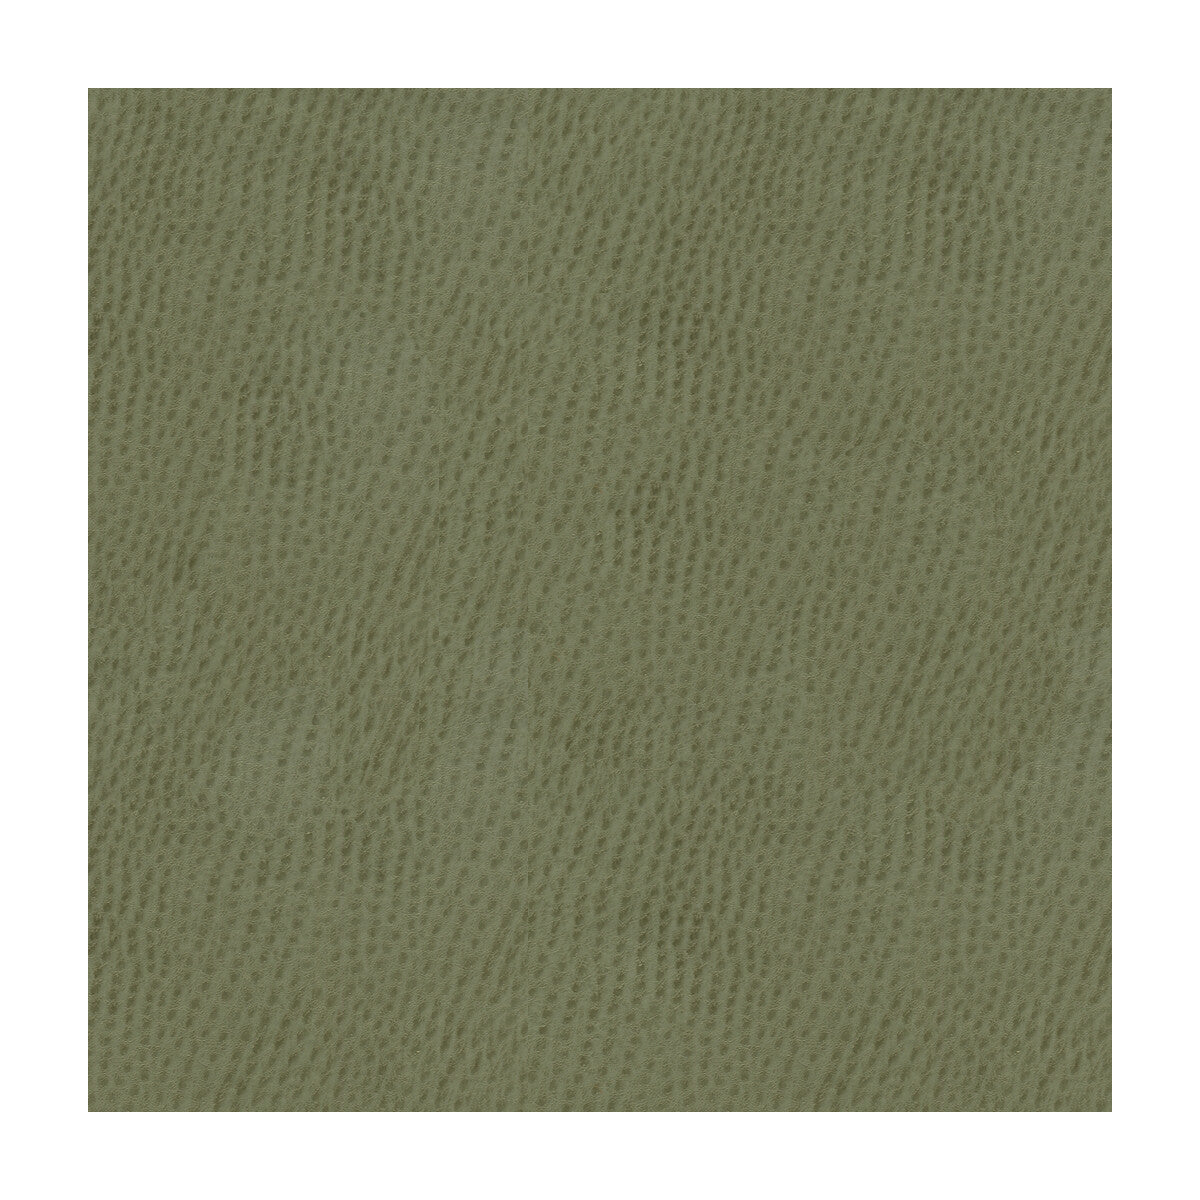 Kravet Smart fabric in ossy-11 color - pattern OSSY.11.0 - by Kravet Smart